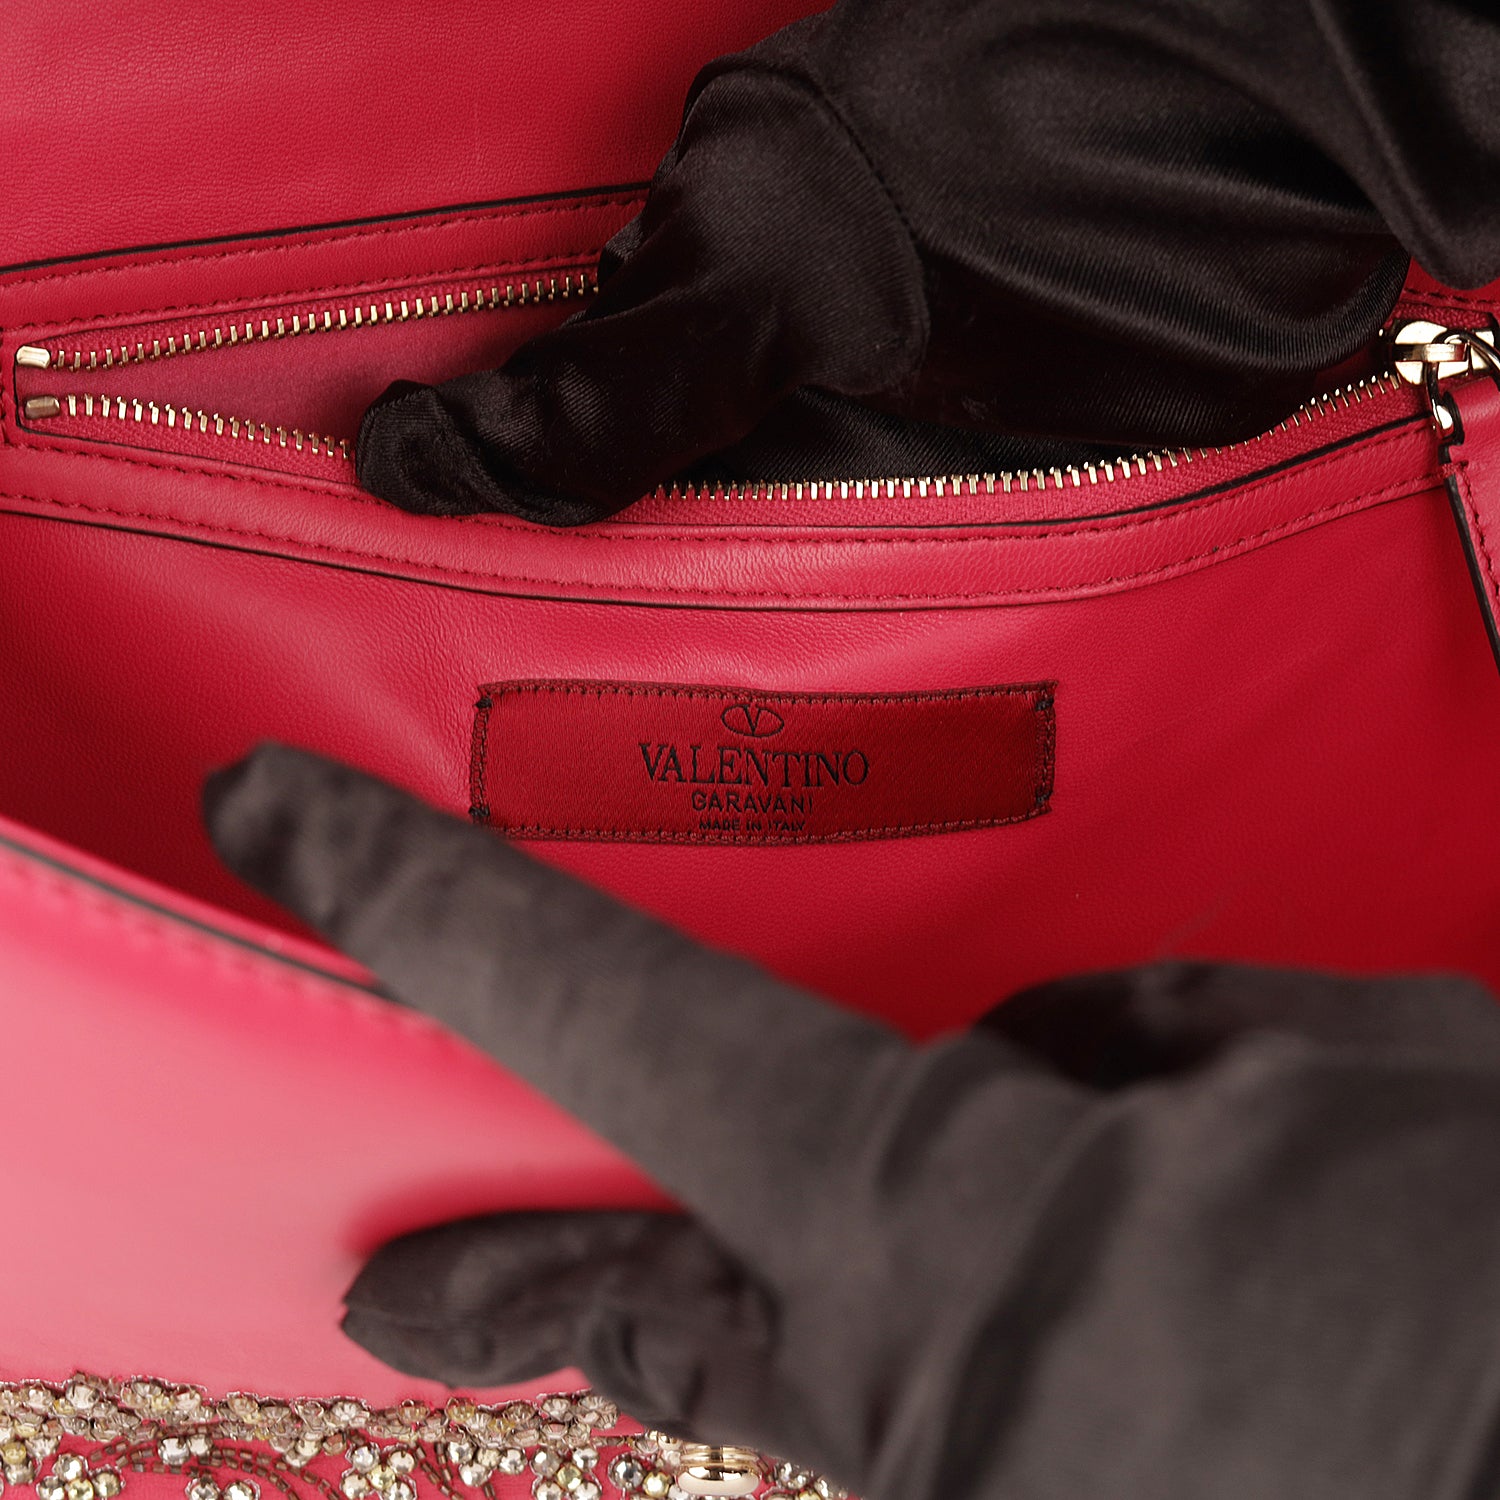 Valentino Red Leather Crystal Embellished Rockstud Glam Lock Flap Bag